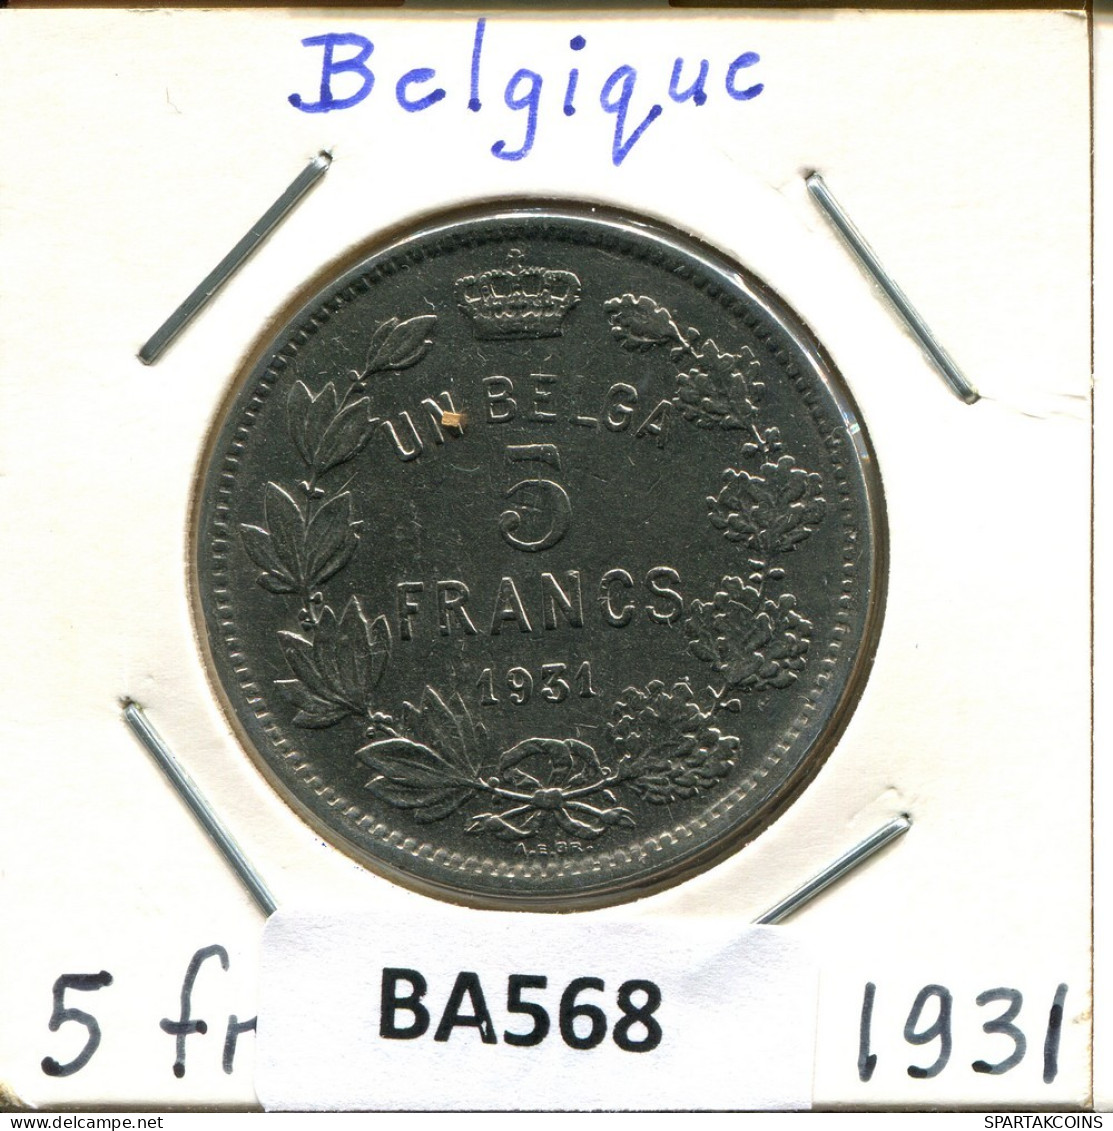 5 FRANCS 1931 BELGIUM Coin FRENCH Text #BA568.U.A - 5 Francs & 1 Belga